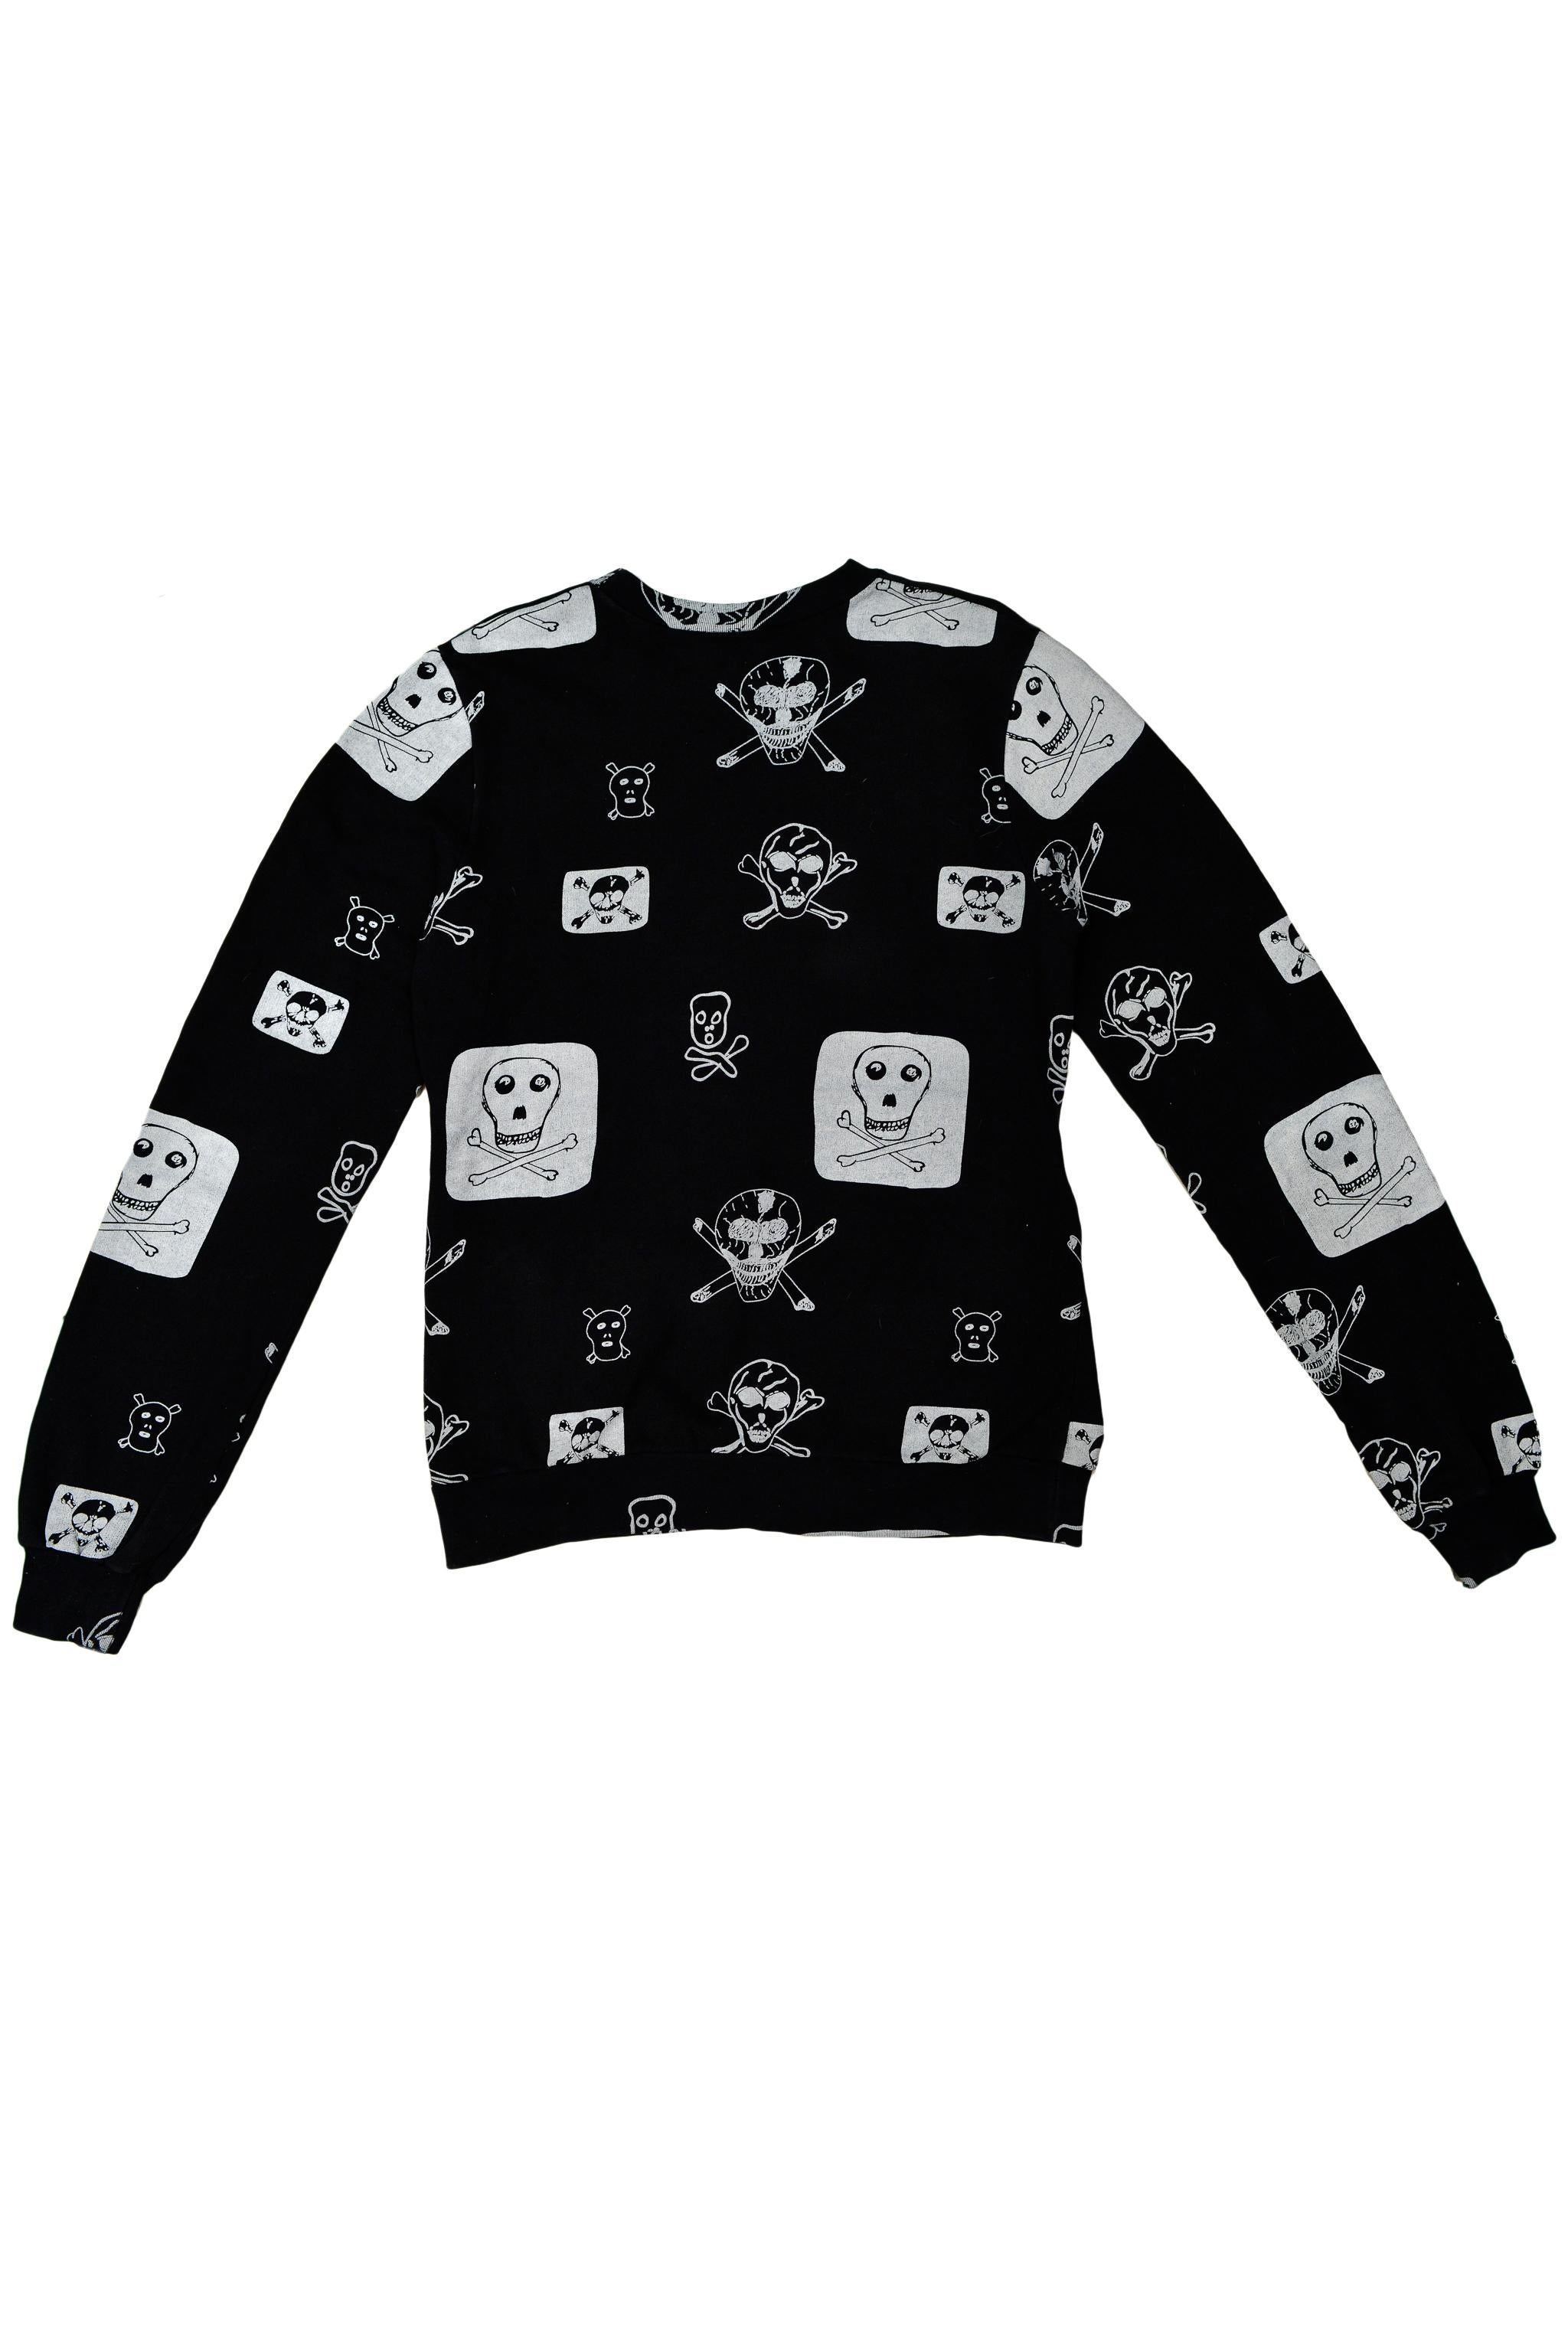 Bernhard Willhelm Black Skull & Crossbones Sweatshirt 2003 In Excellent Condition For Sale In Los Angeles, CA